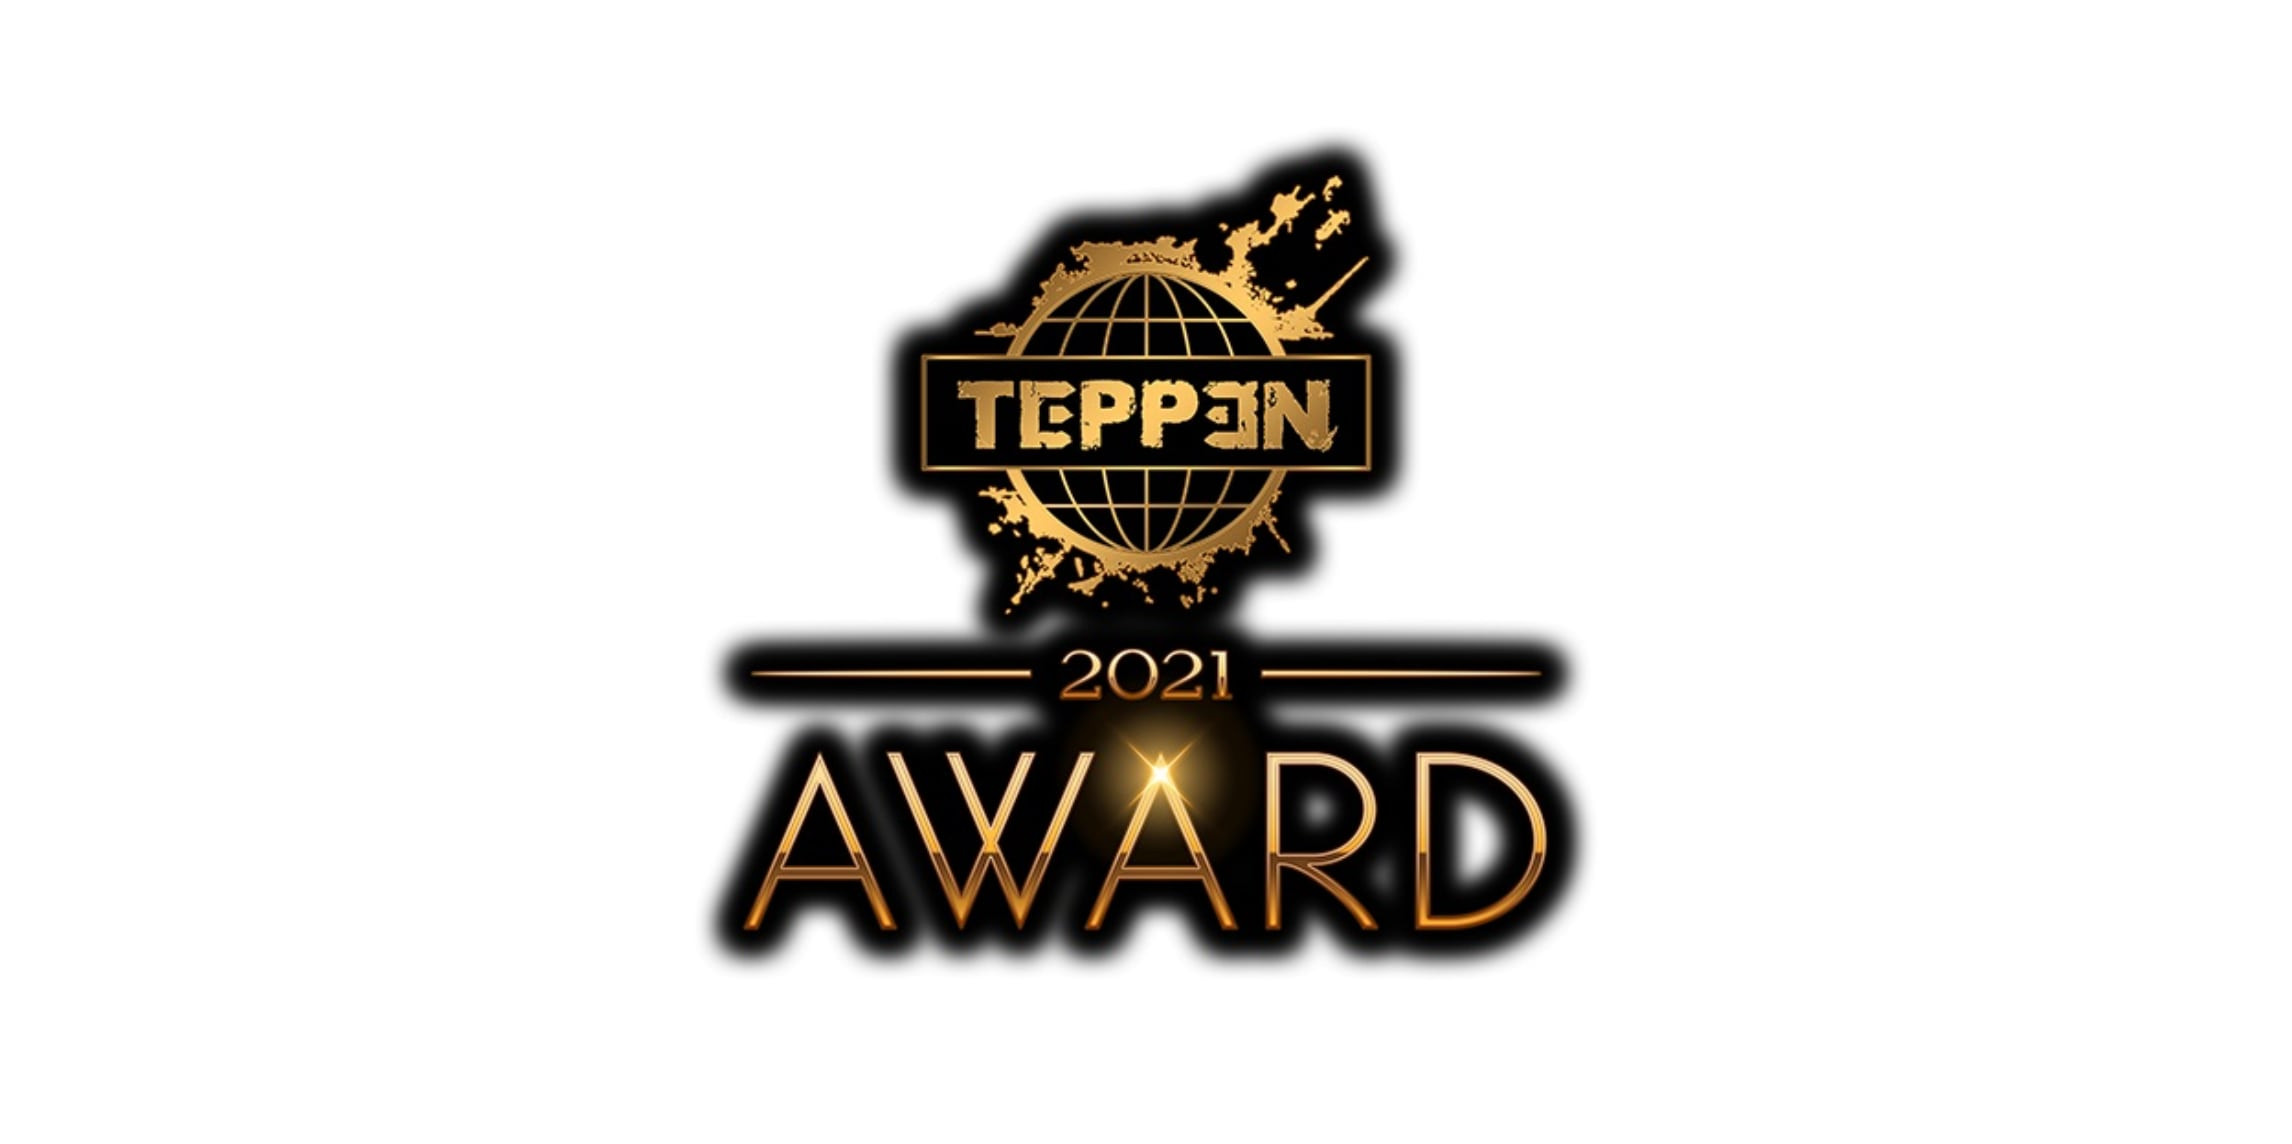 【大会情報】TEPPEN AWARD 2021 エキシビションマッチ【2021年12月17日】